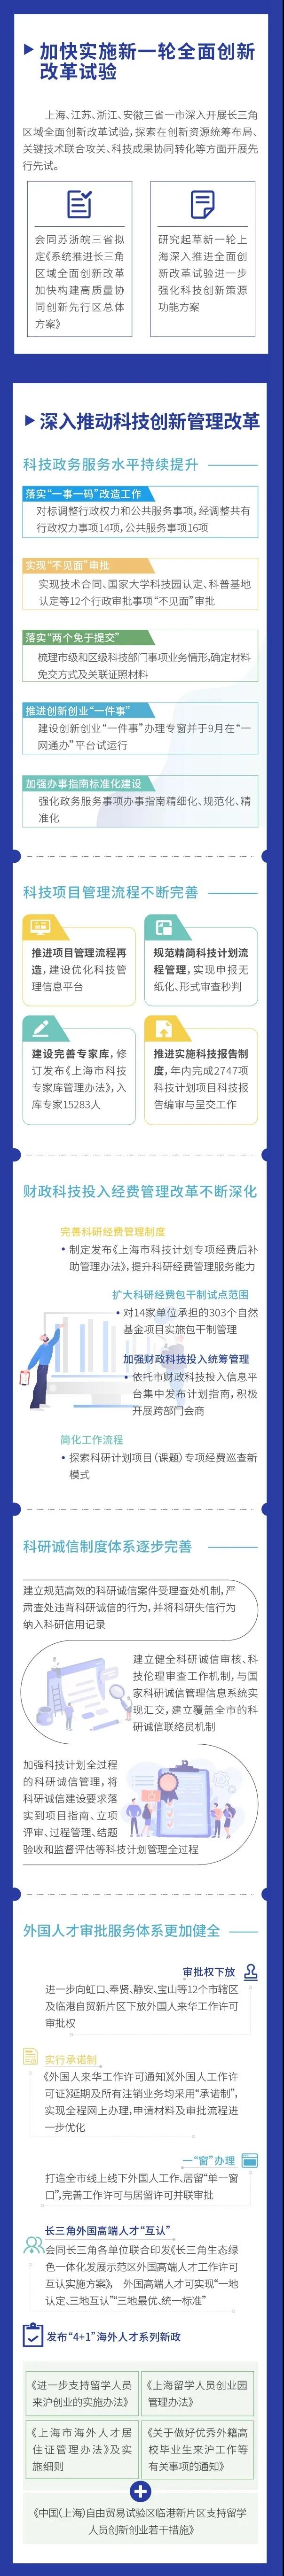 图看《2020上海科技进步报告》⑤2.jpg